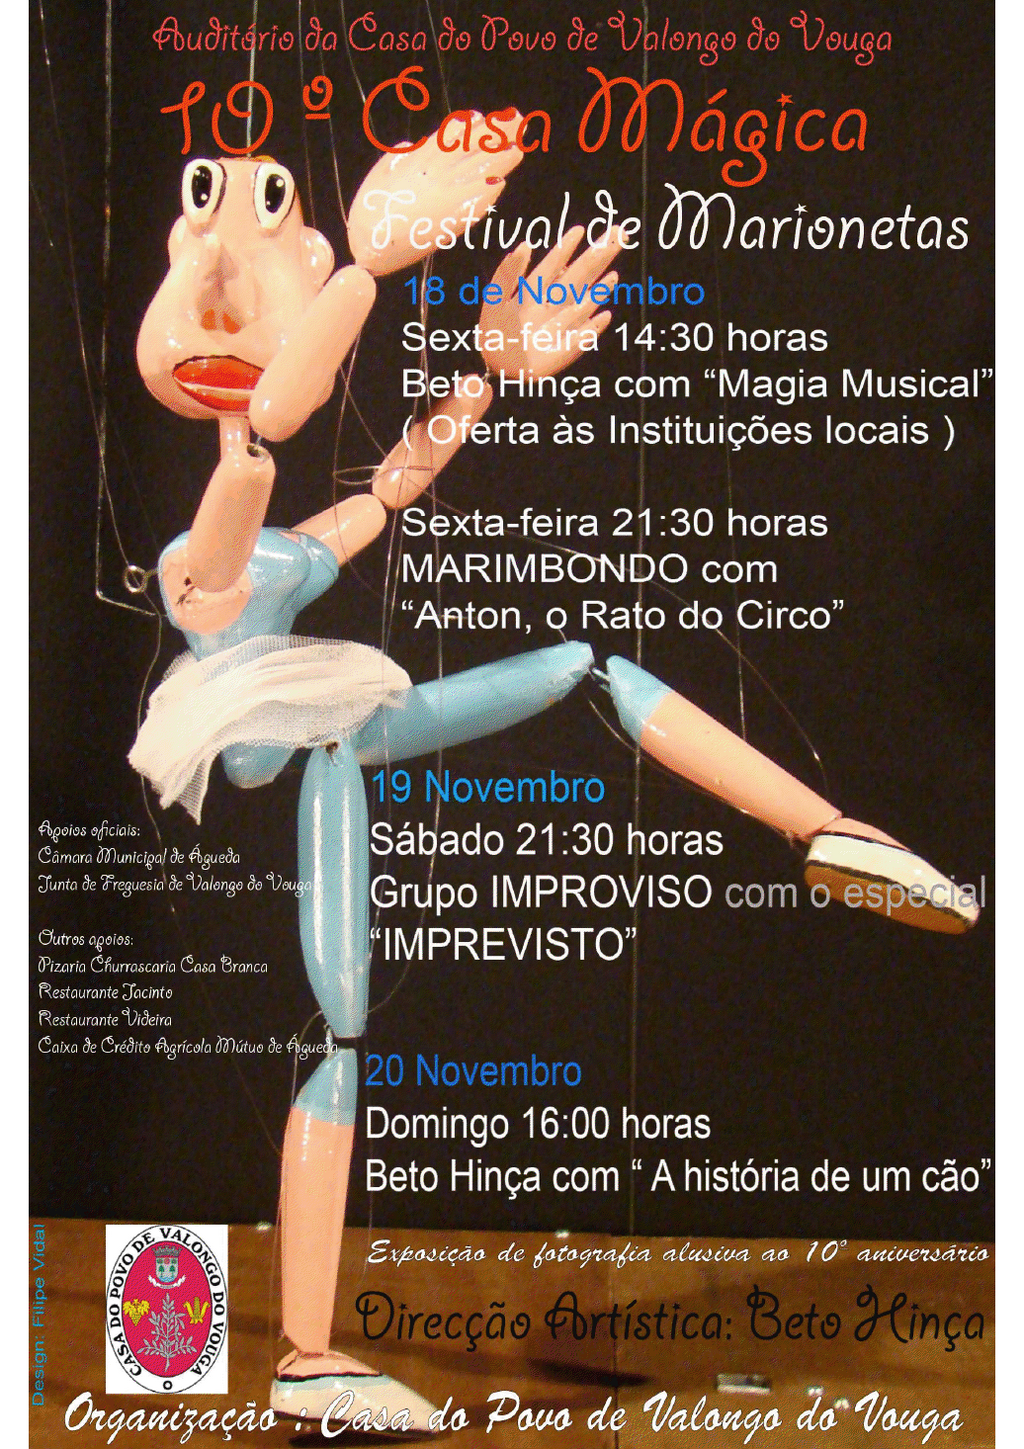 Festival de Marionetas [Org.: Casa do Povo de Valongo do Vouga]